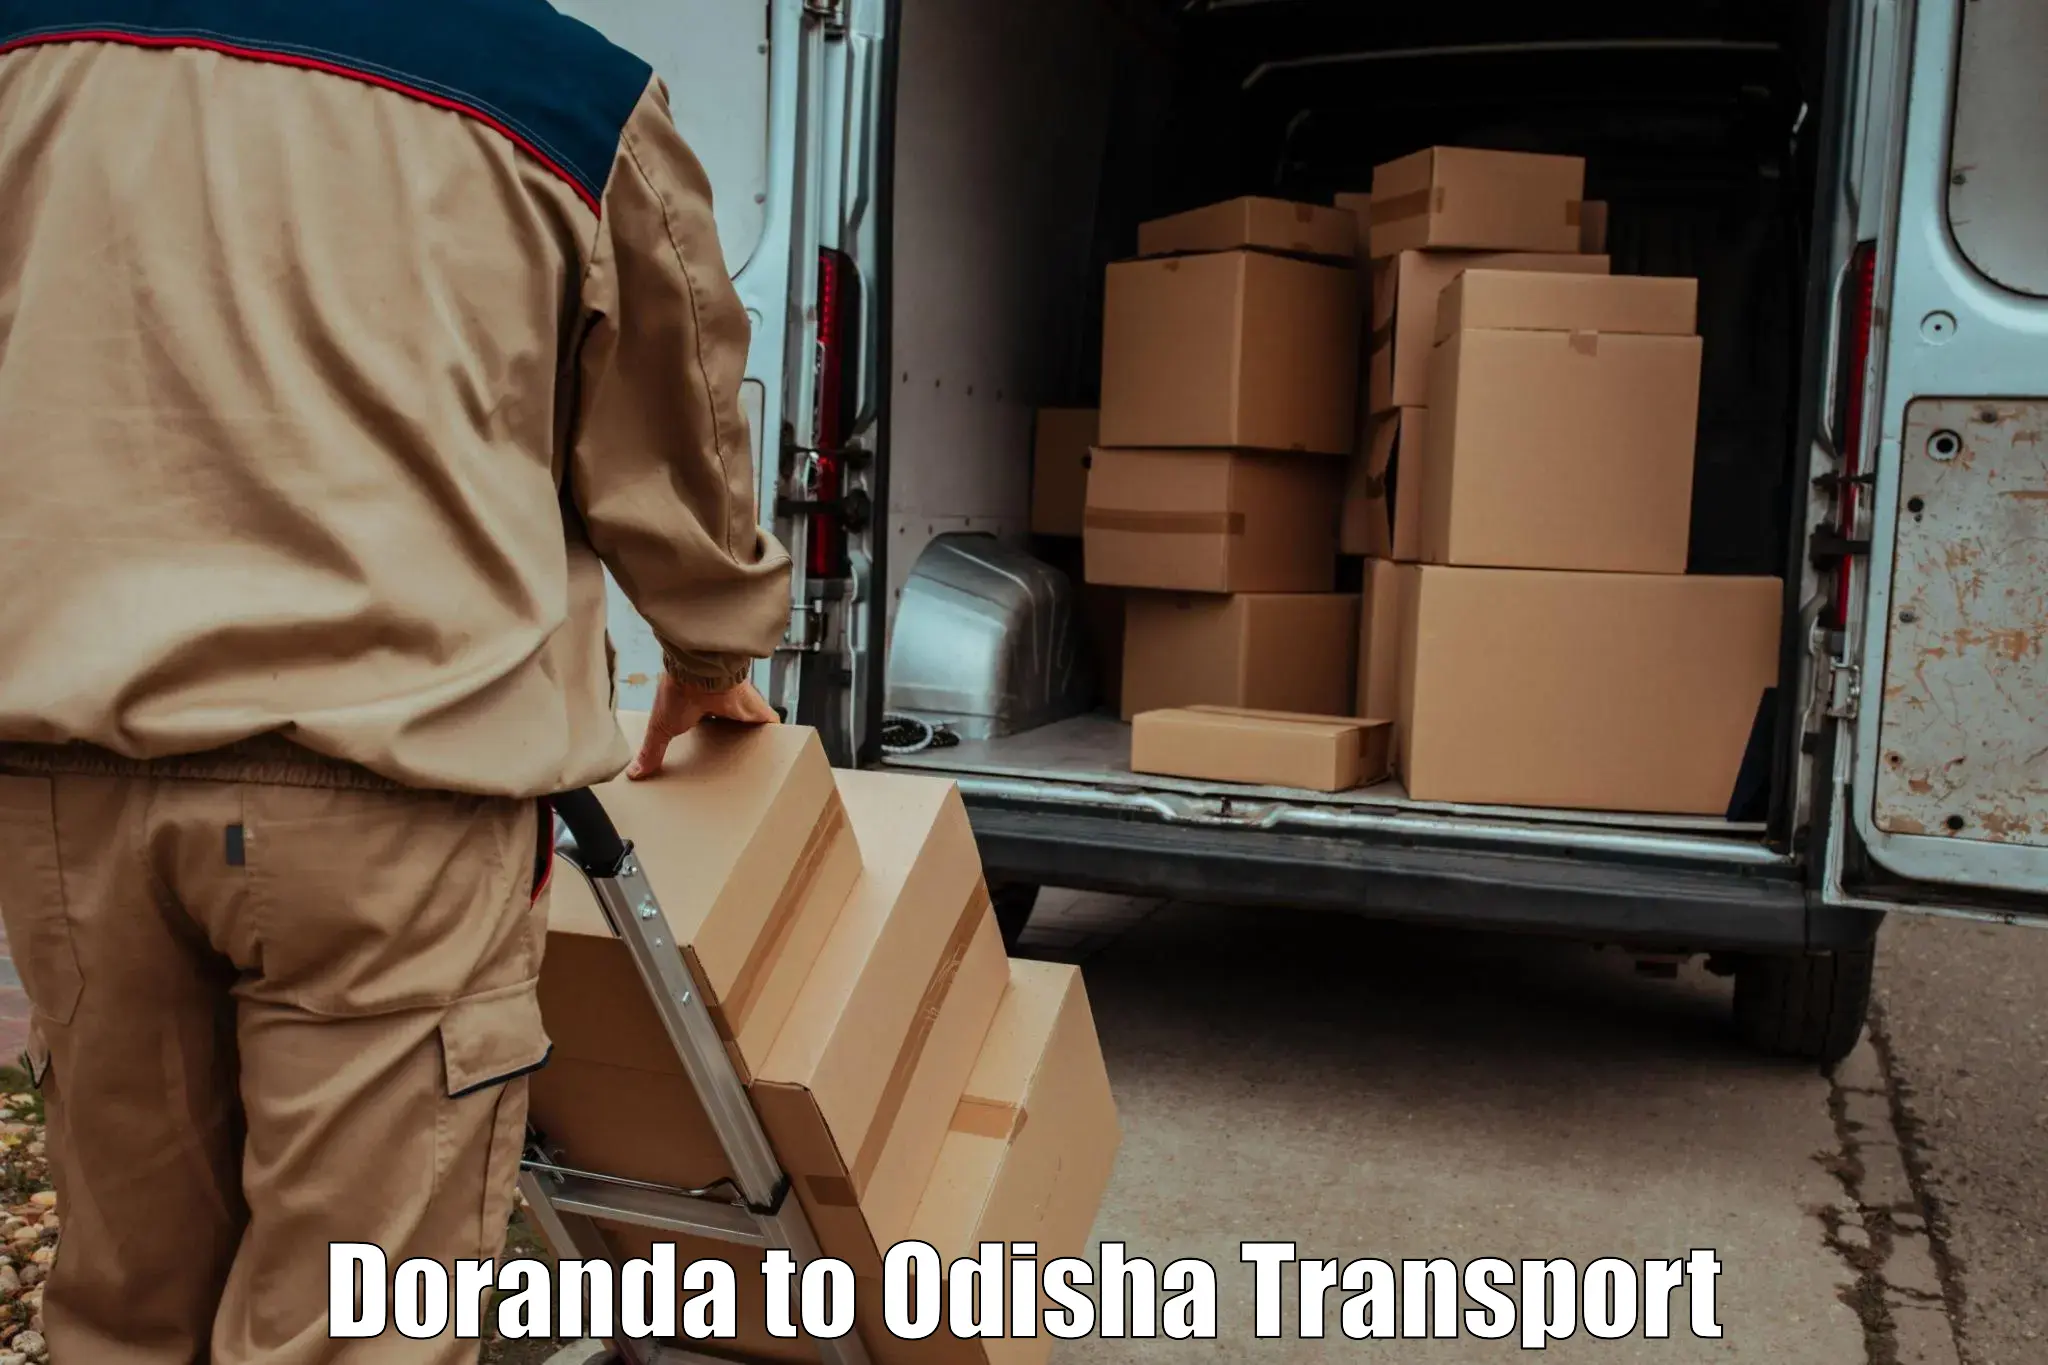 All India transport service Doranda to Titilagarh